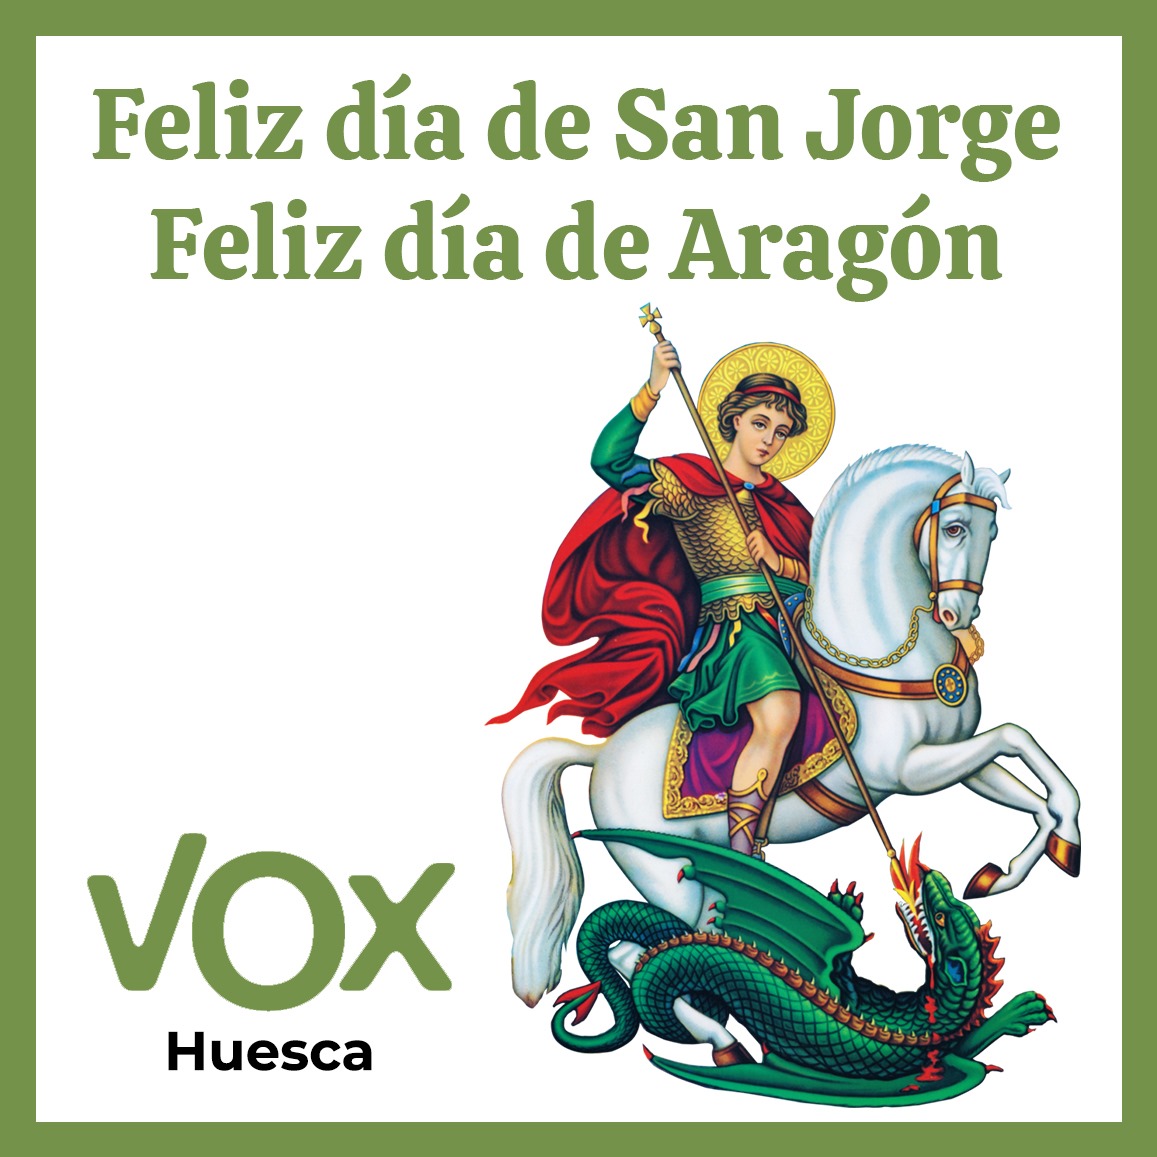 Feliz día de nuestro patrón San Jorge. @aragonvox